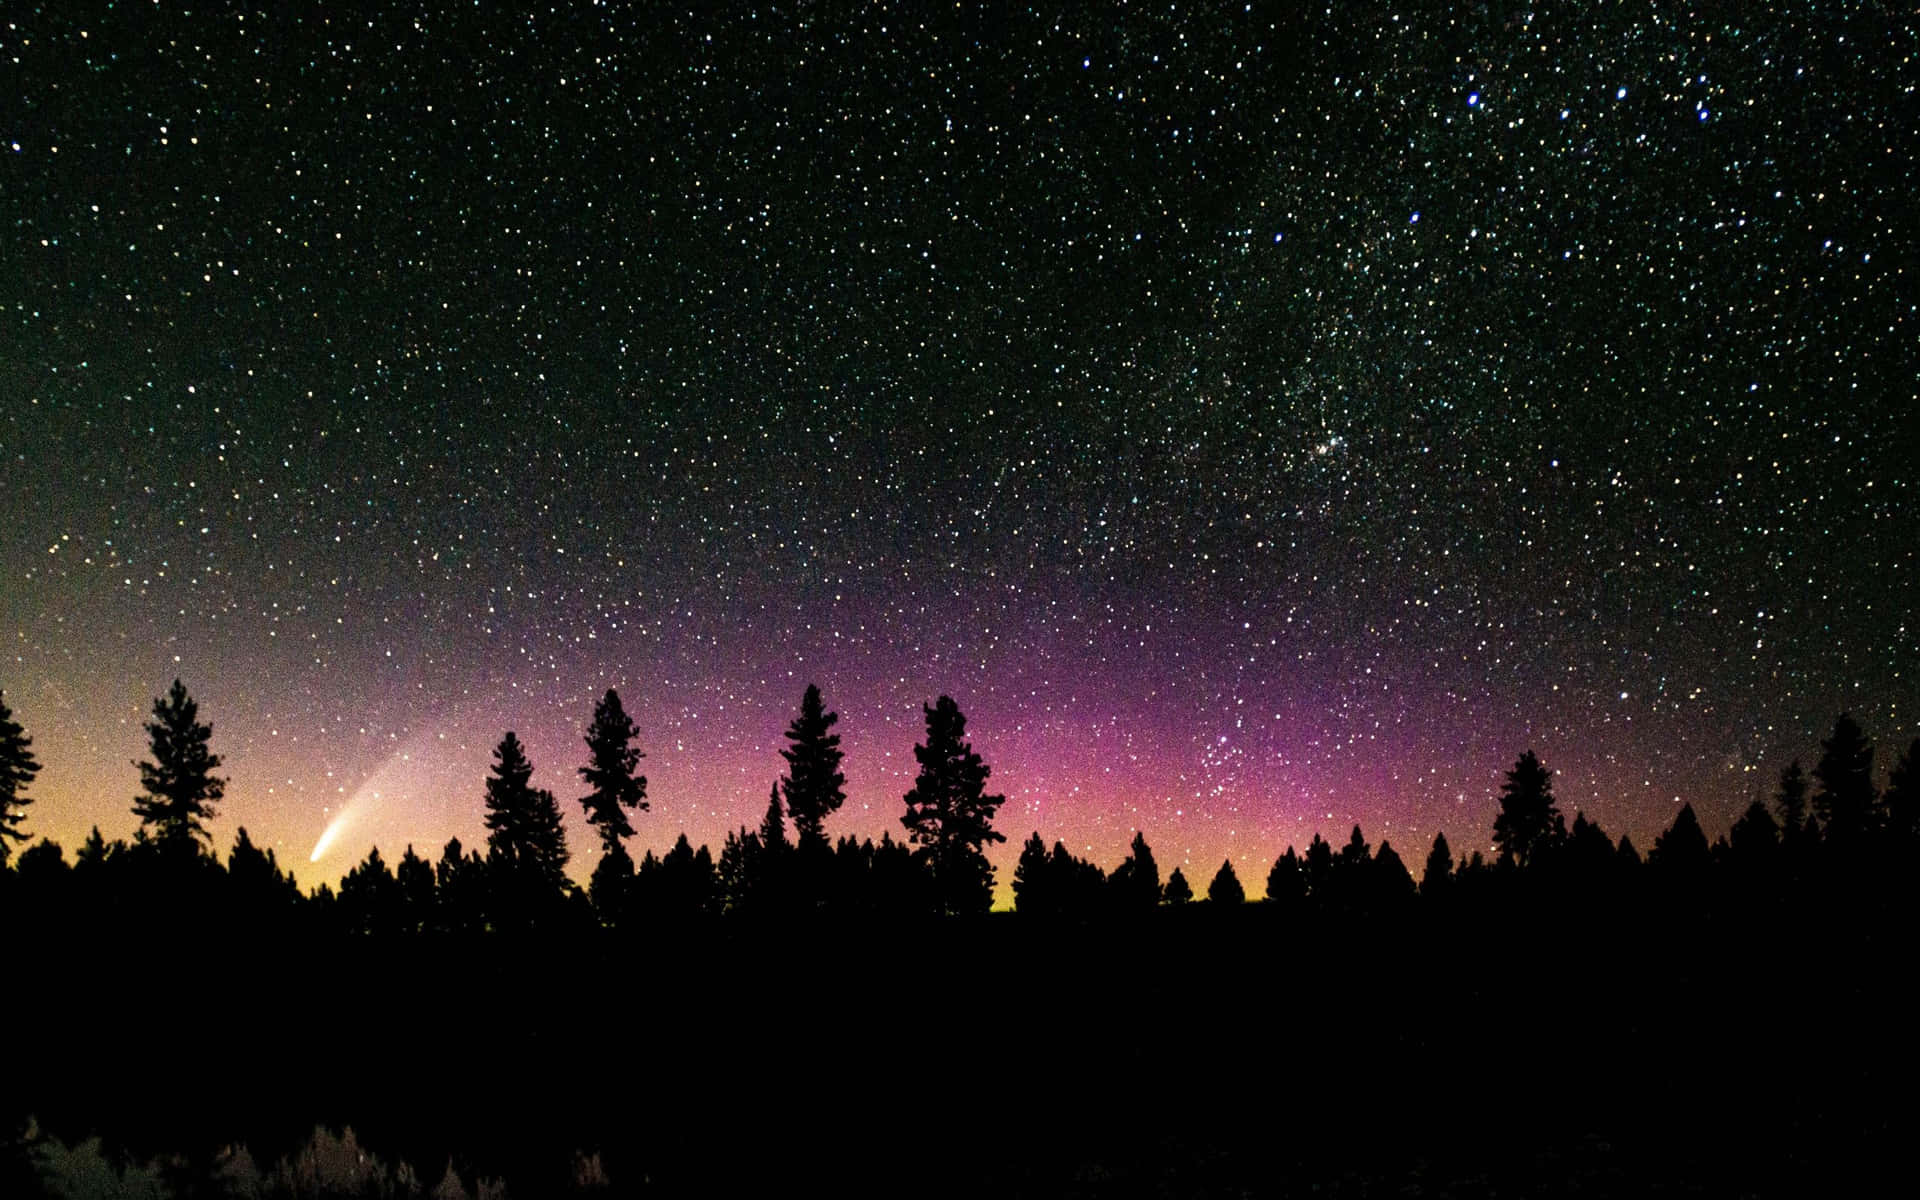 Hintergrundbildmit Weltraumsternen, Farbenfrohem Himmel Im Wald.